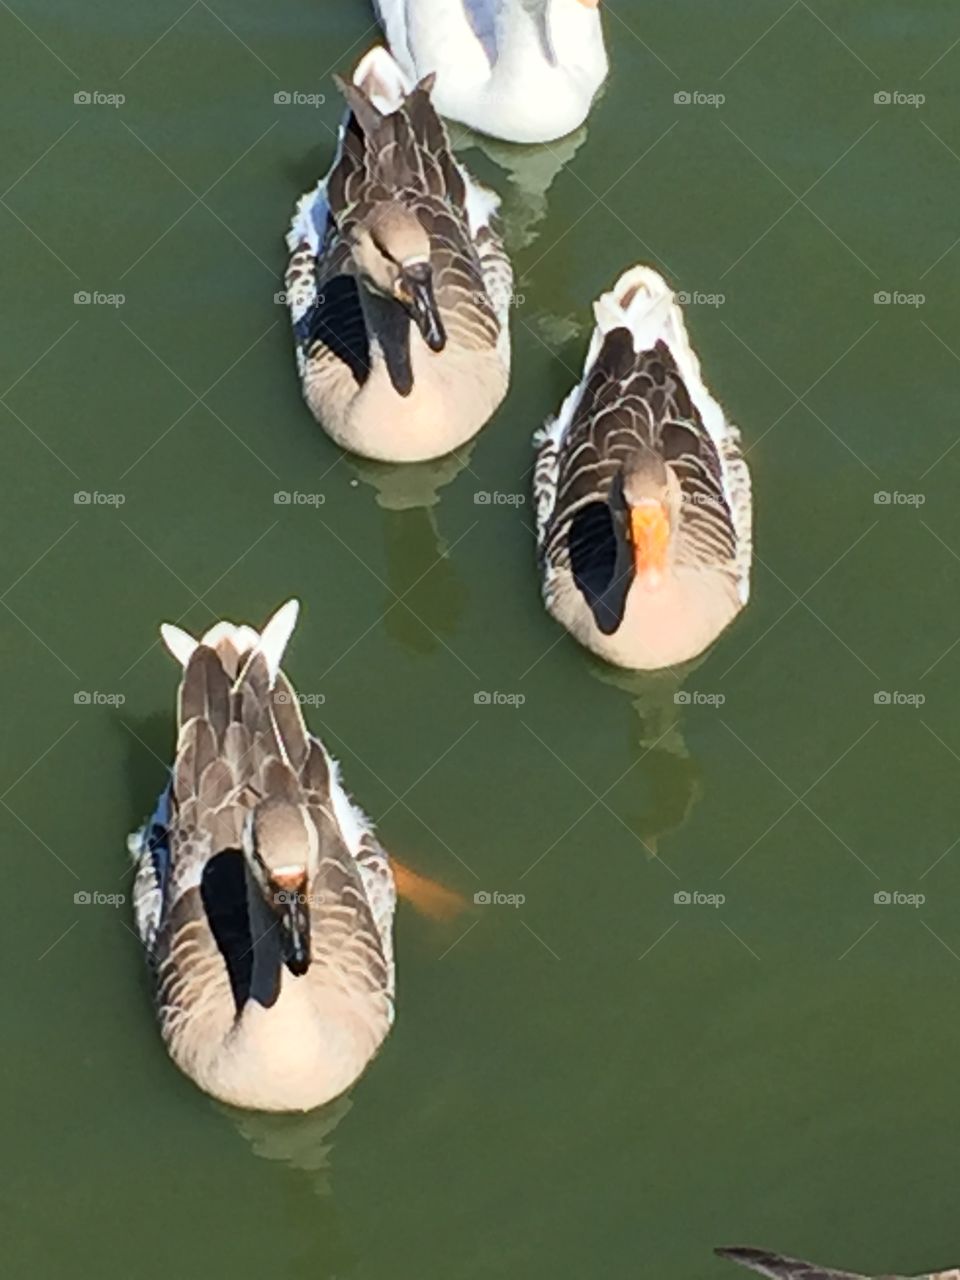 Ducks on water
